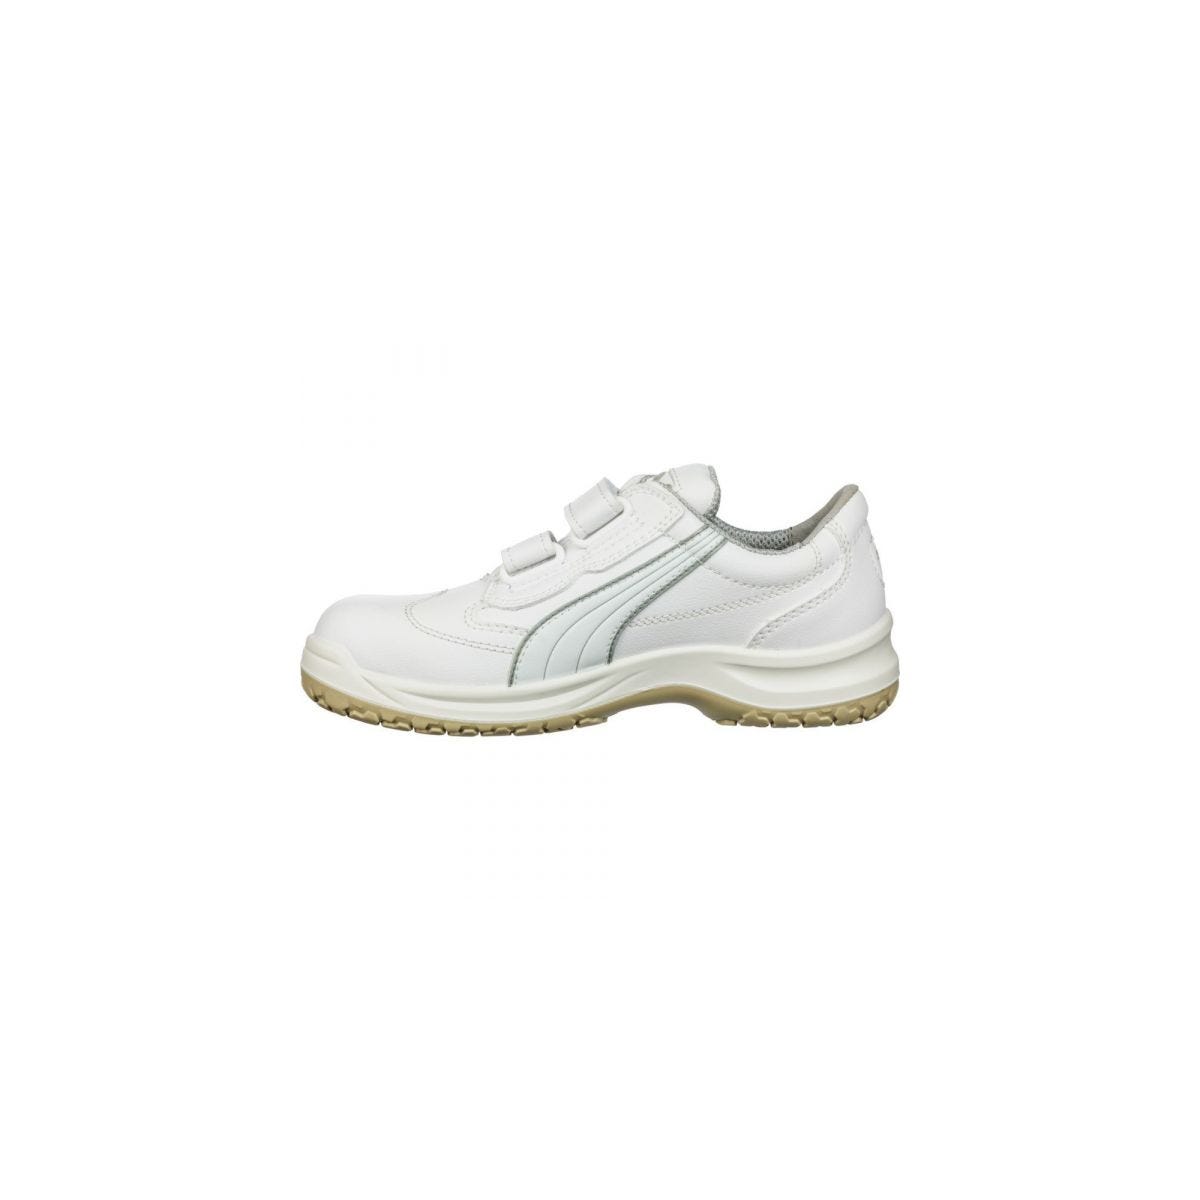 Chaussures de sécurité Absolute Low S2 Blanc - Puma - Taille 36 1